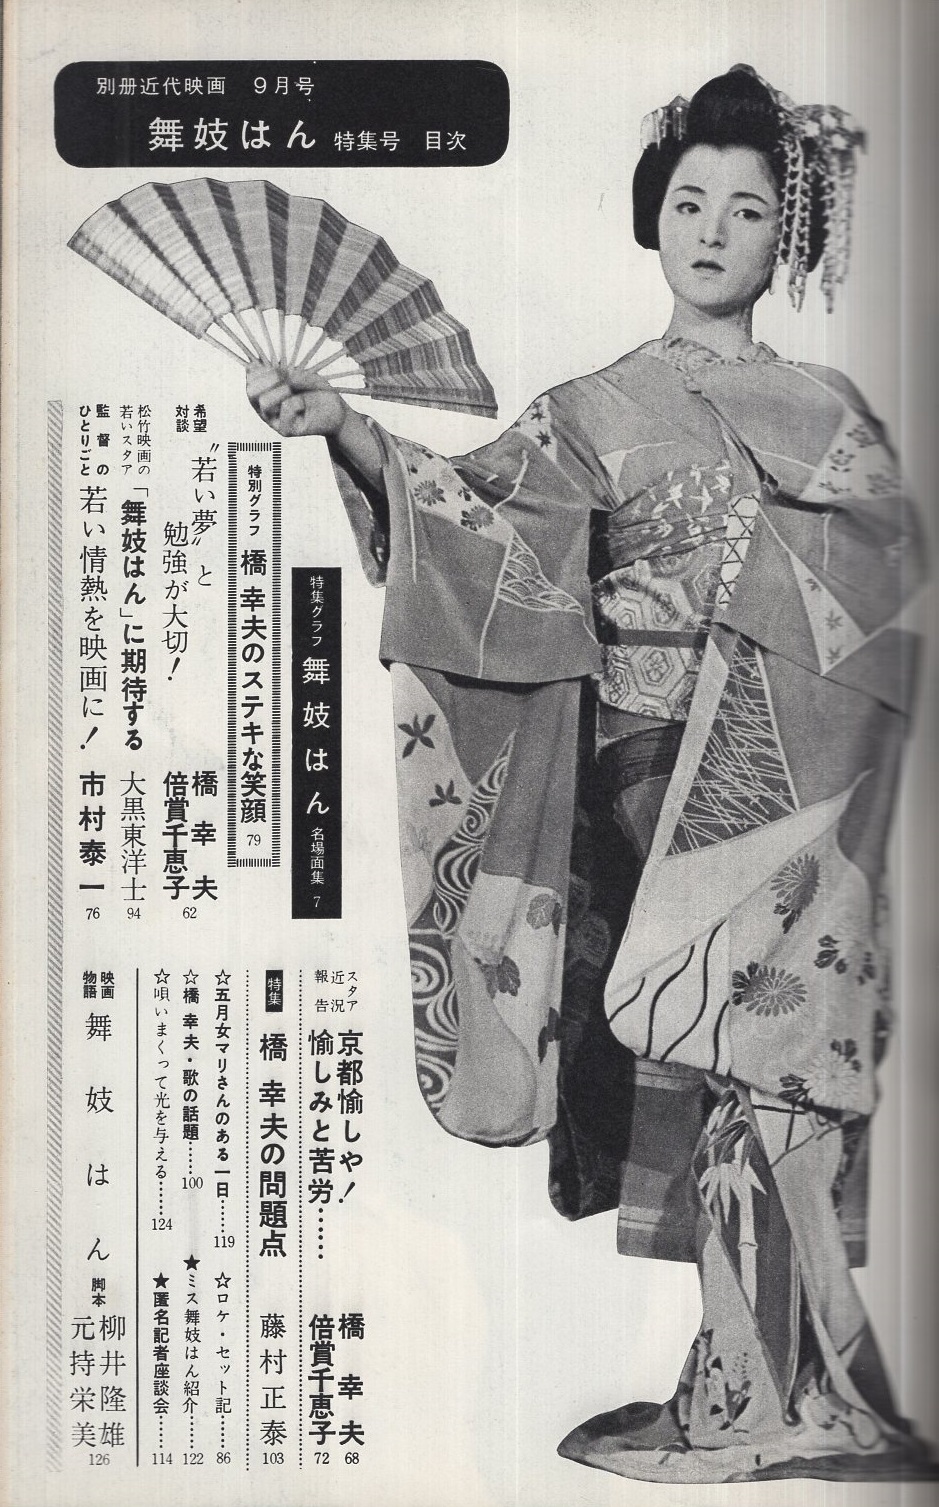 別冊近代映画 「舞妓はん」特集号 昭和38年9月号 表紙モデル・橋幸夫